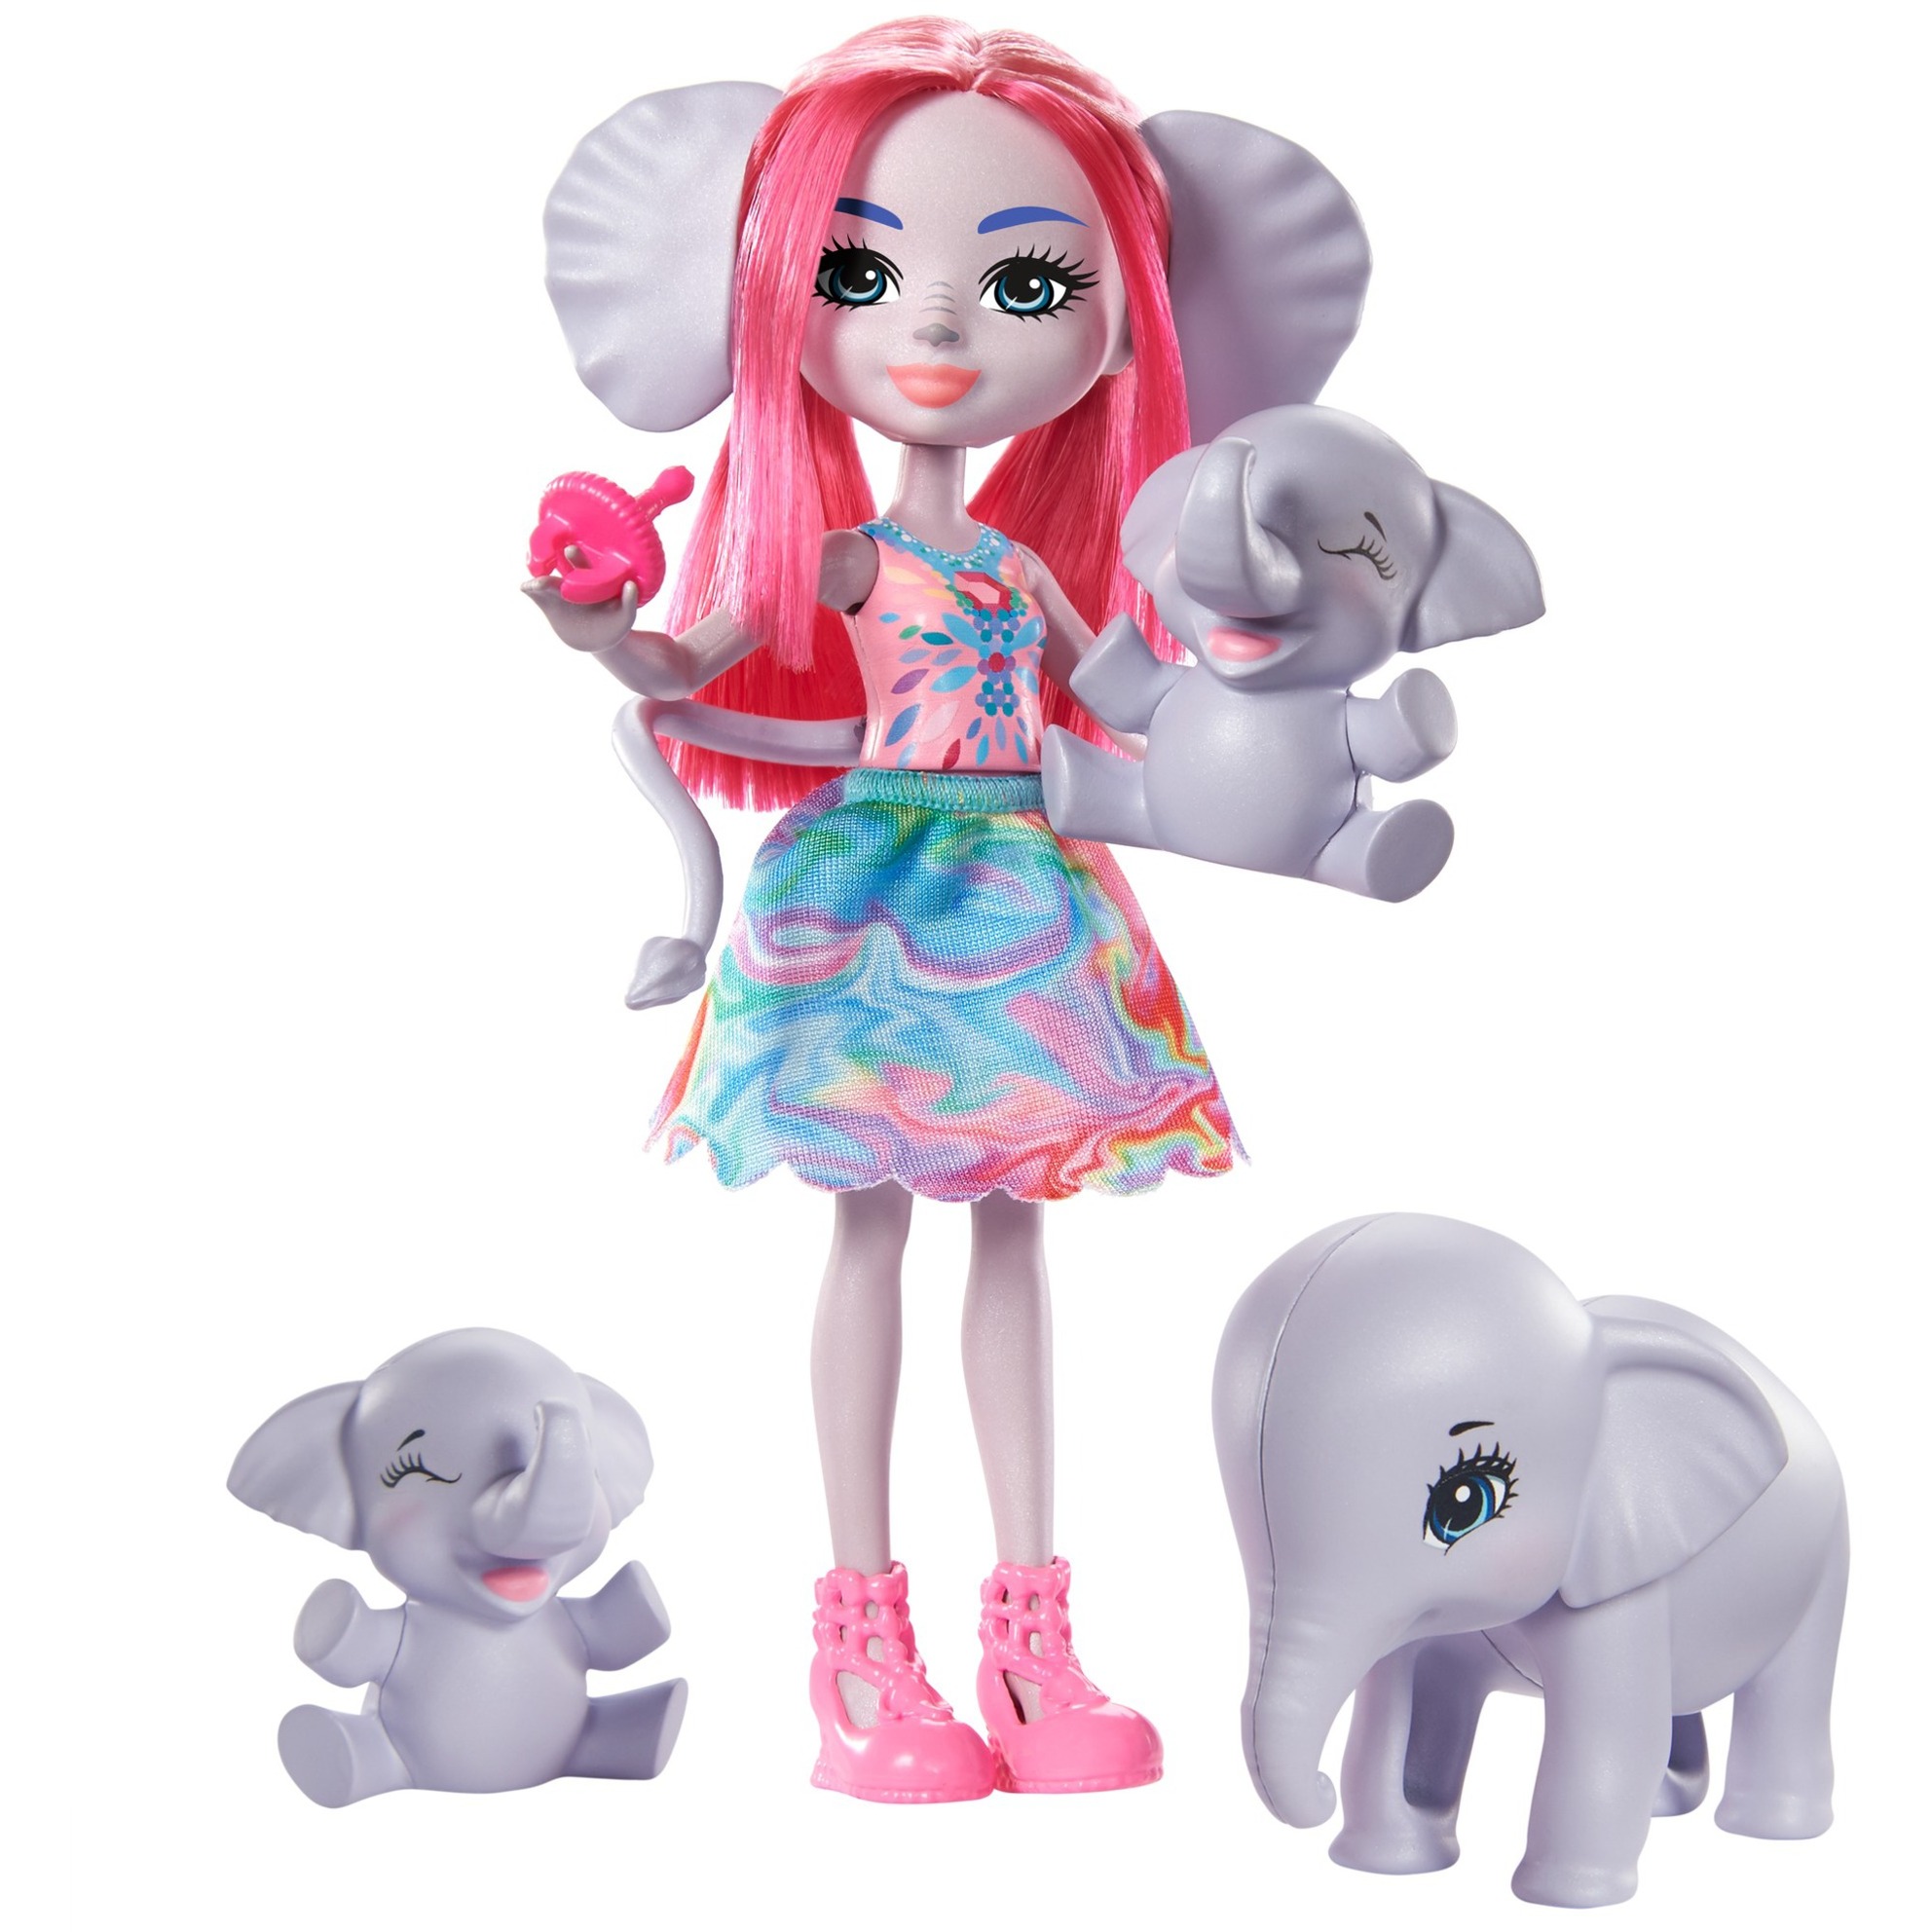 Image of Alternate - Enchantimals Esmeralda Elephant Familie, Puppe online einkaufen bei Alternate